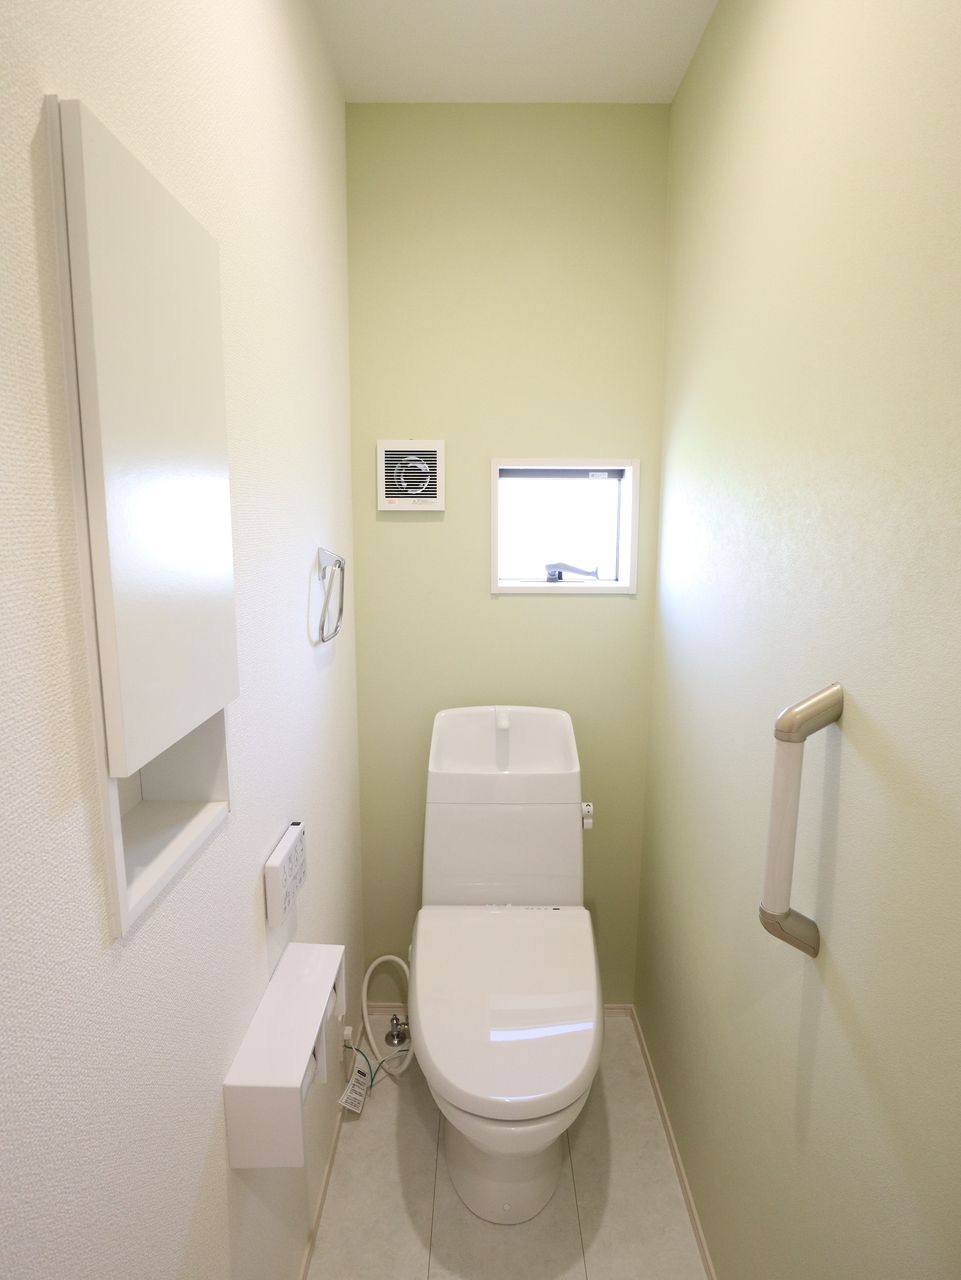 アクセントクロスが柔らかいイメージの空間に仕上げています。トイレはジャニス工業製品です。自動脱臭機能付きです。